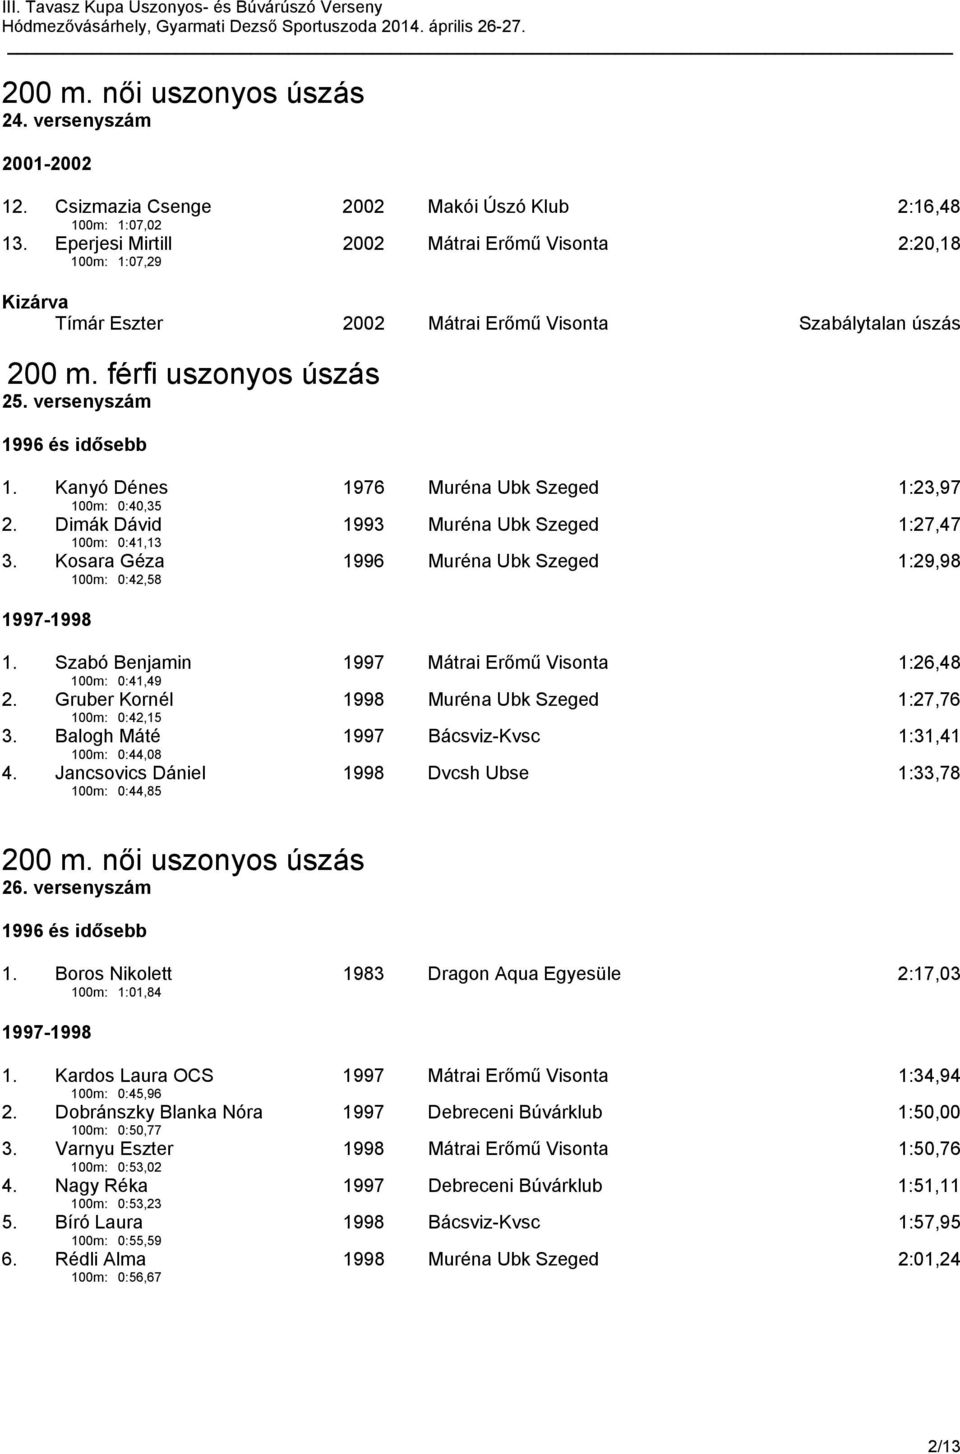 Kanyó Dénes 100m: 0:40,35 1976 Muréna Ubk Szeged 1:23,97 2. Dimák Dávid 100m: 0:41,13 1993 Muréna Ubk Szeged 1:27,47 3. Kosara Géza 100m: 0:42,58 1996 Muréna Ubk Szeged 1:29,98 1997-1998 1.